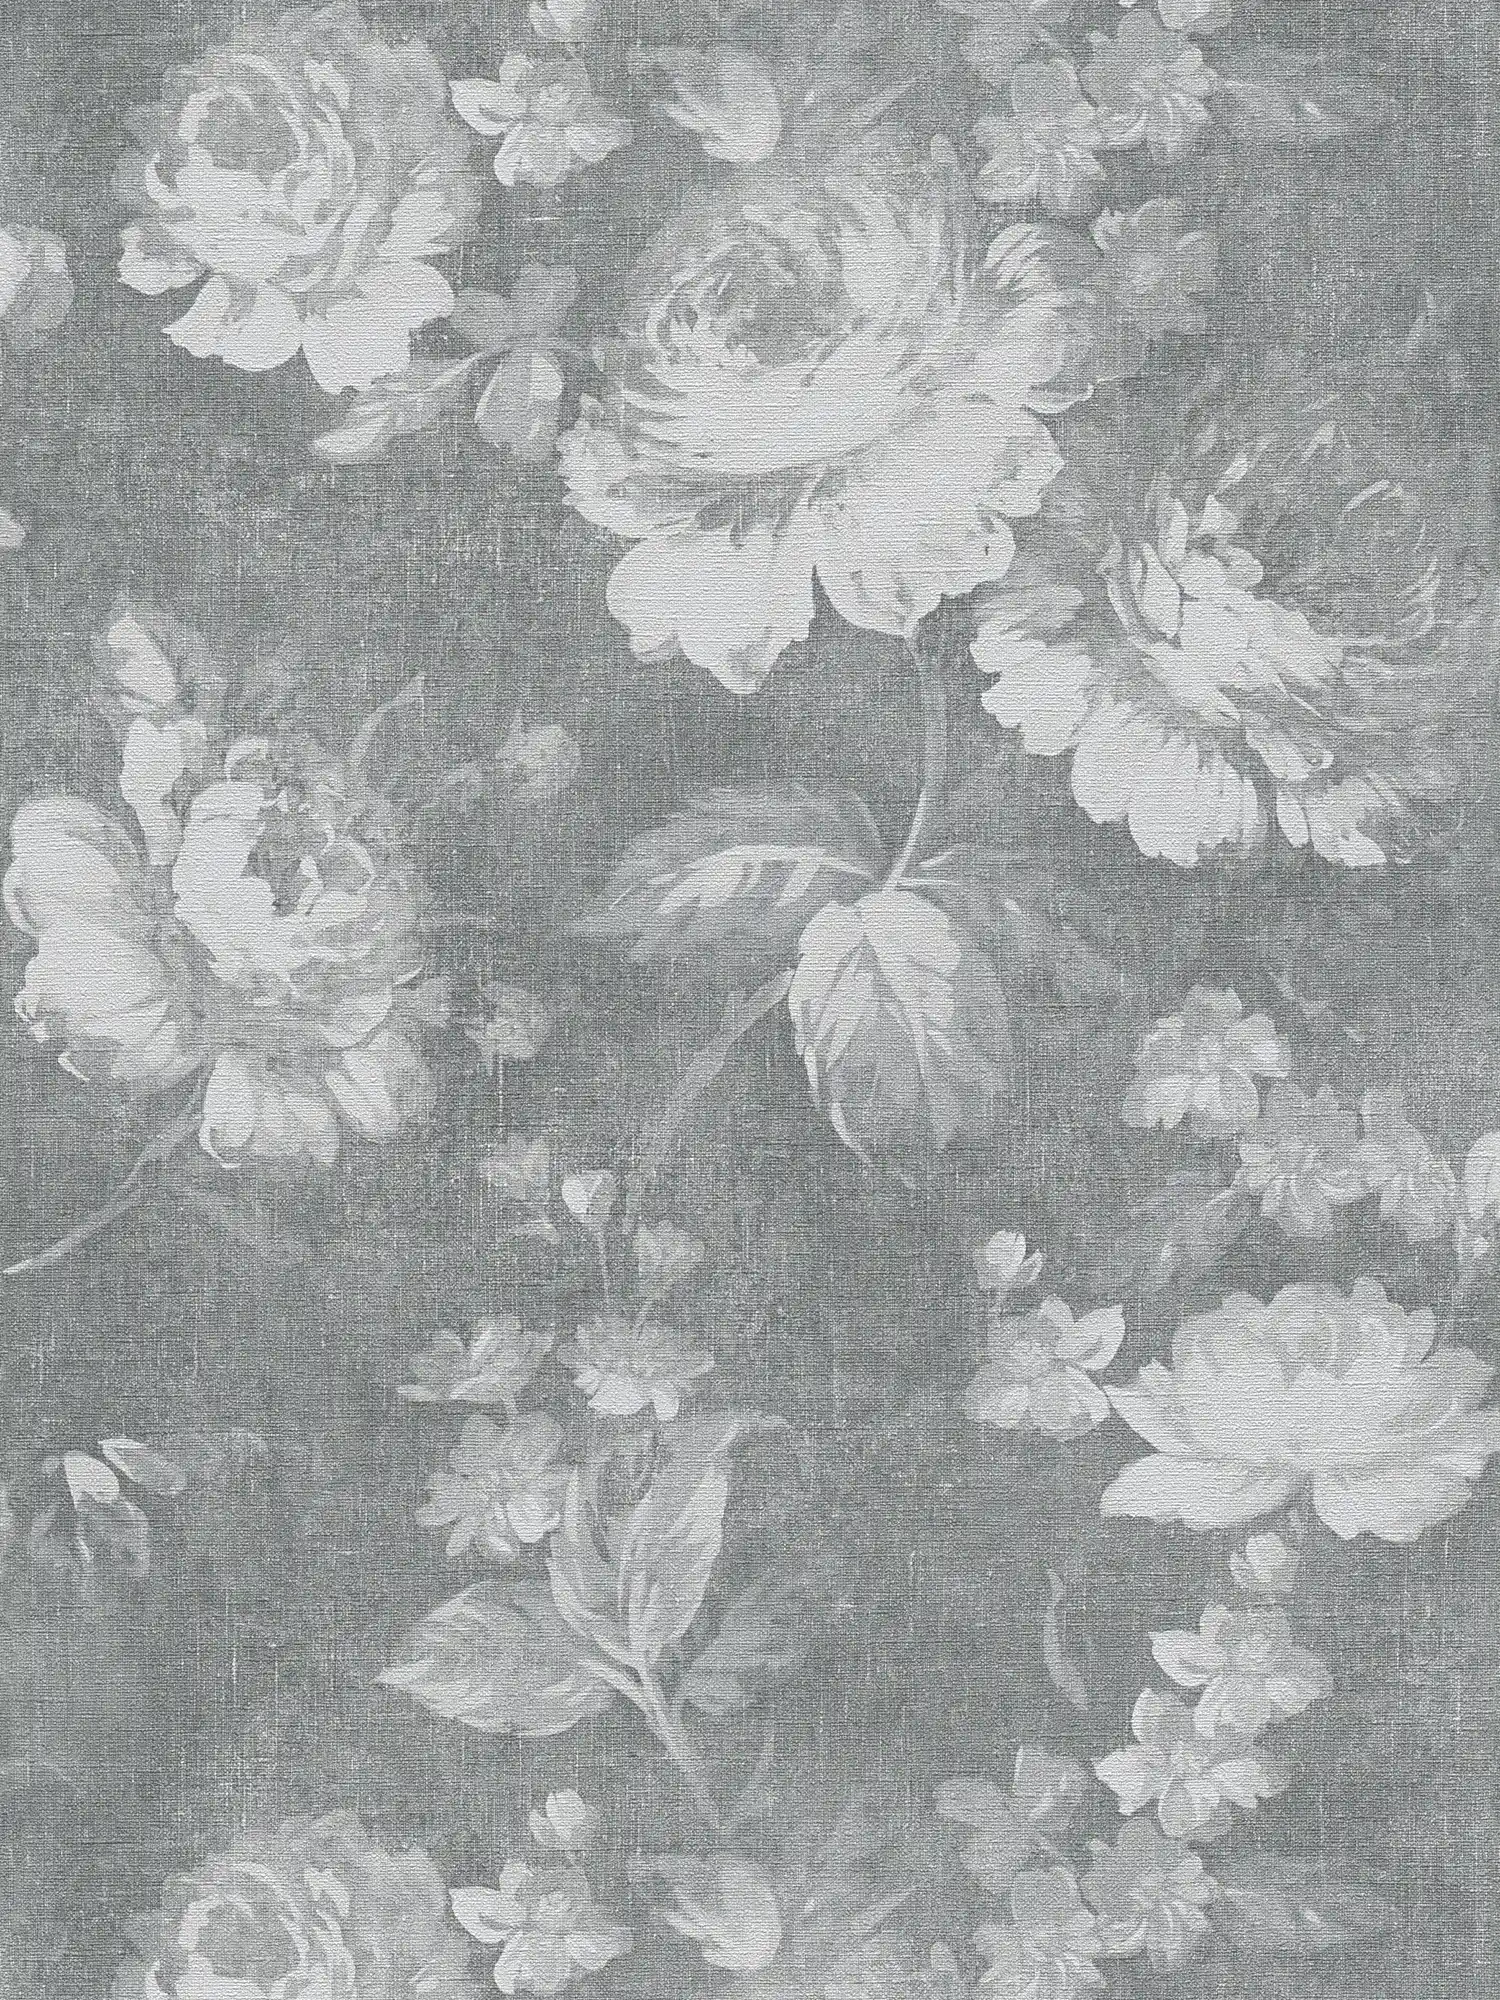 Vintage rose pattern floral wallpaper - grey
